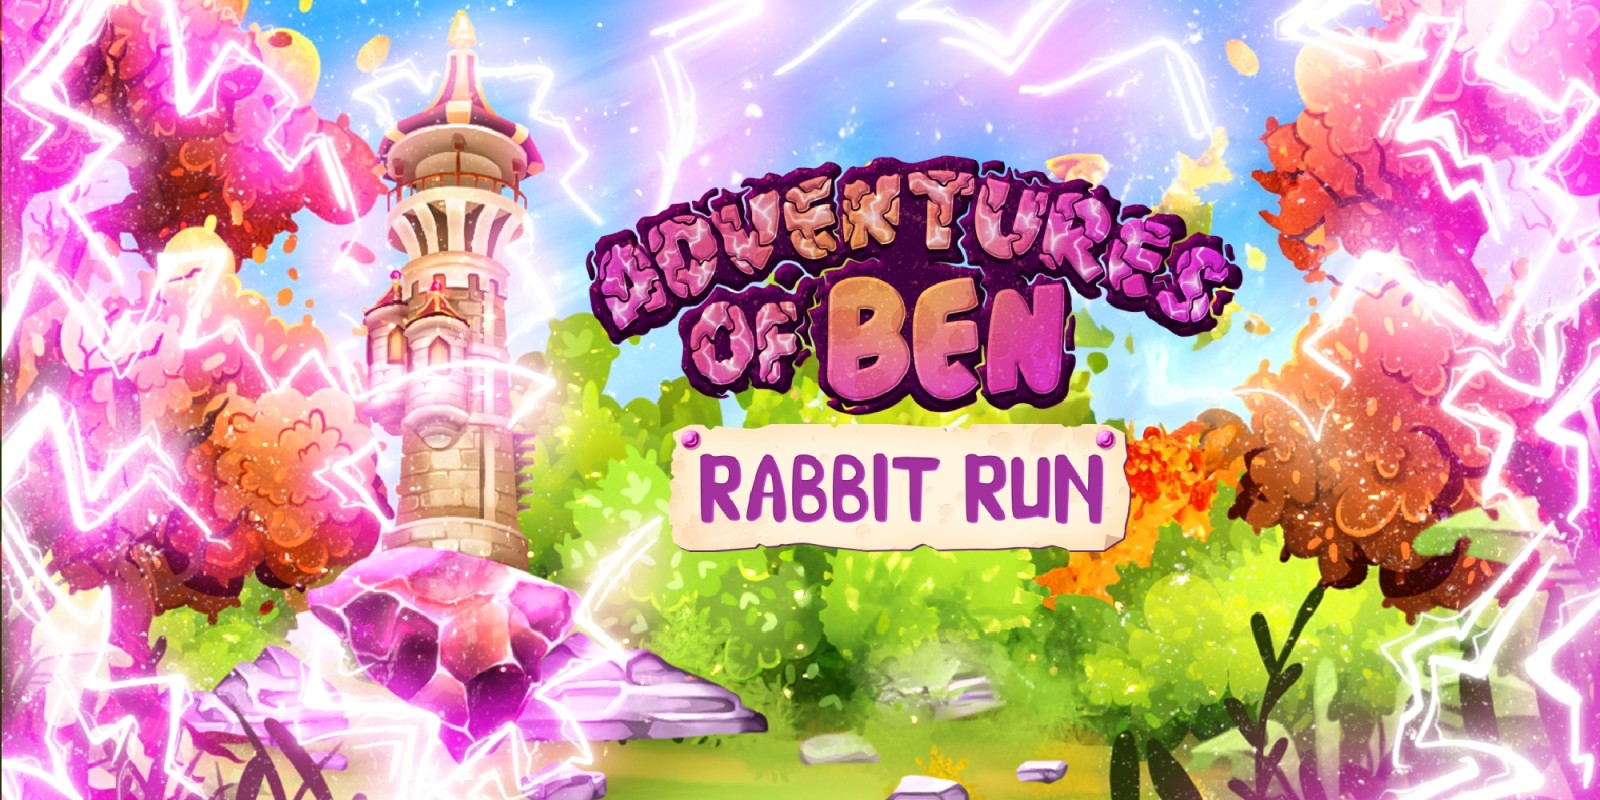 Adventures of Ben: Rabbit Run